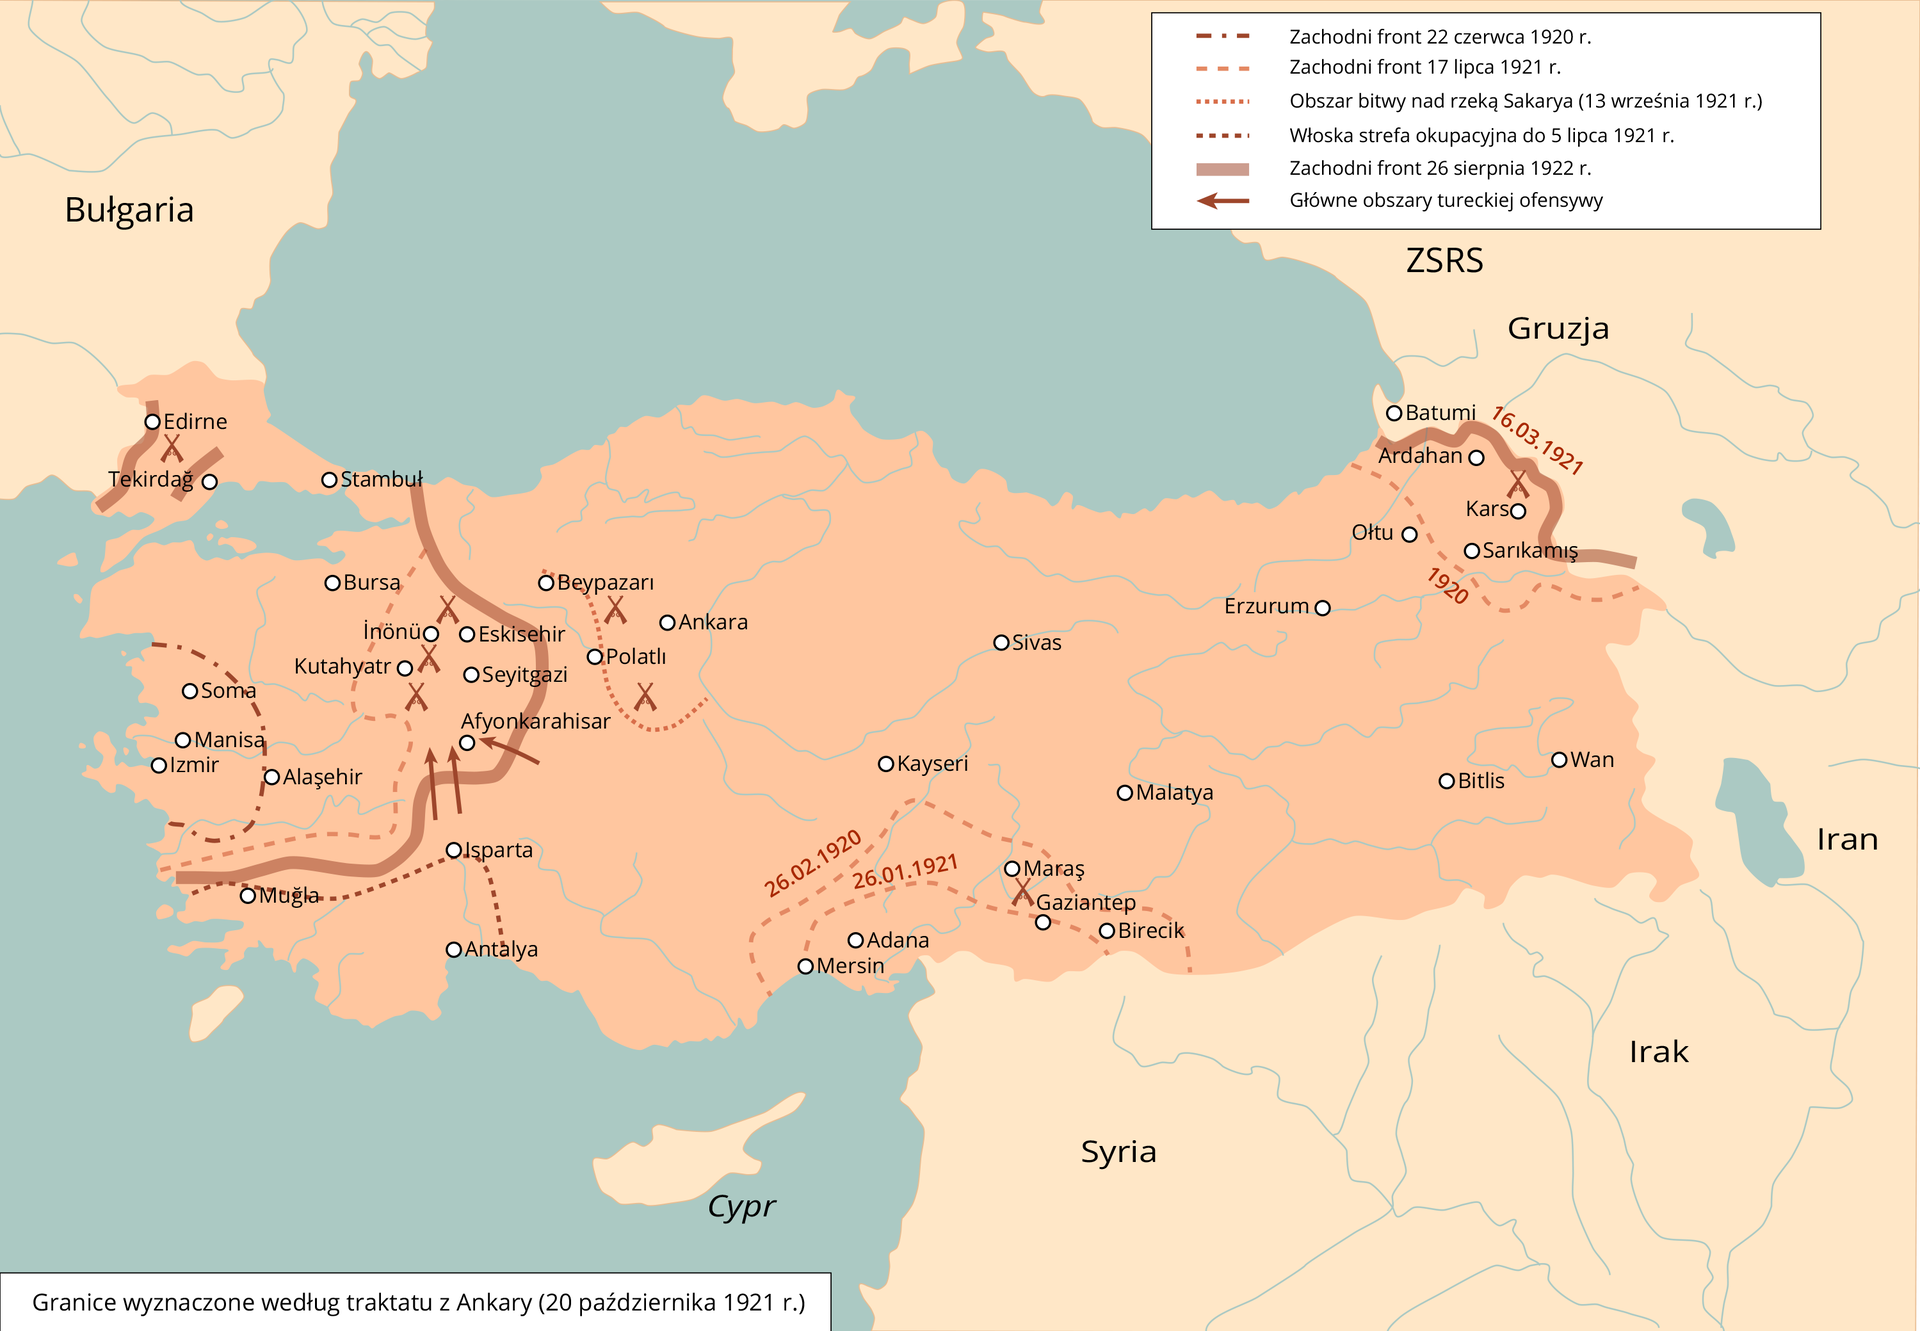 Mapa przedstawia fronty działań wojennych podczas wojny o niepodległość Turcji. Front zachodni miał miejsce 22 czerwca 1920 roku, w zachodniej część Turcji i obejmując miasta takie jak Soma, Manisa, Izmir. Zachodni front z 17 lipca 1921 roku obejmował większą część strony zachodniej Turcji w jej skład wchodziły miasta takie jak Bursa Stambuł, Tekirdag, Edirne, Alasehir. Obszar bitwy nad rzeką Sakarya z 13 września 1921 roku obejmował teren obecnej Ankary. Włoska strefa okupacyjna do 5 lipca 1921 roku znajdowała się na południowym - zachodzie Turcji i obejmowała miasta Mugla, Isparta i Antalya. Zachodni front 26 sierpnia 1922 roku znajdował się między zachodnią, a centralną częścią kraju oraz przy granicy z Bułgarią i Gruzją po wschodniej stronie. Główne obszary tureckiej ofensywy miały miejsce po zachodniej stronie w Afyonkarahisar. 